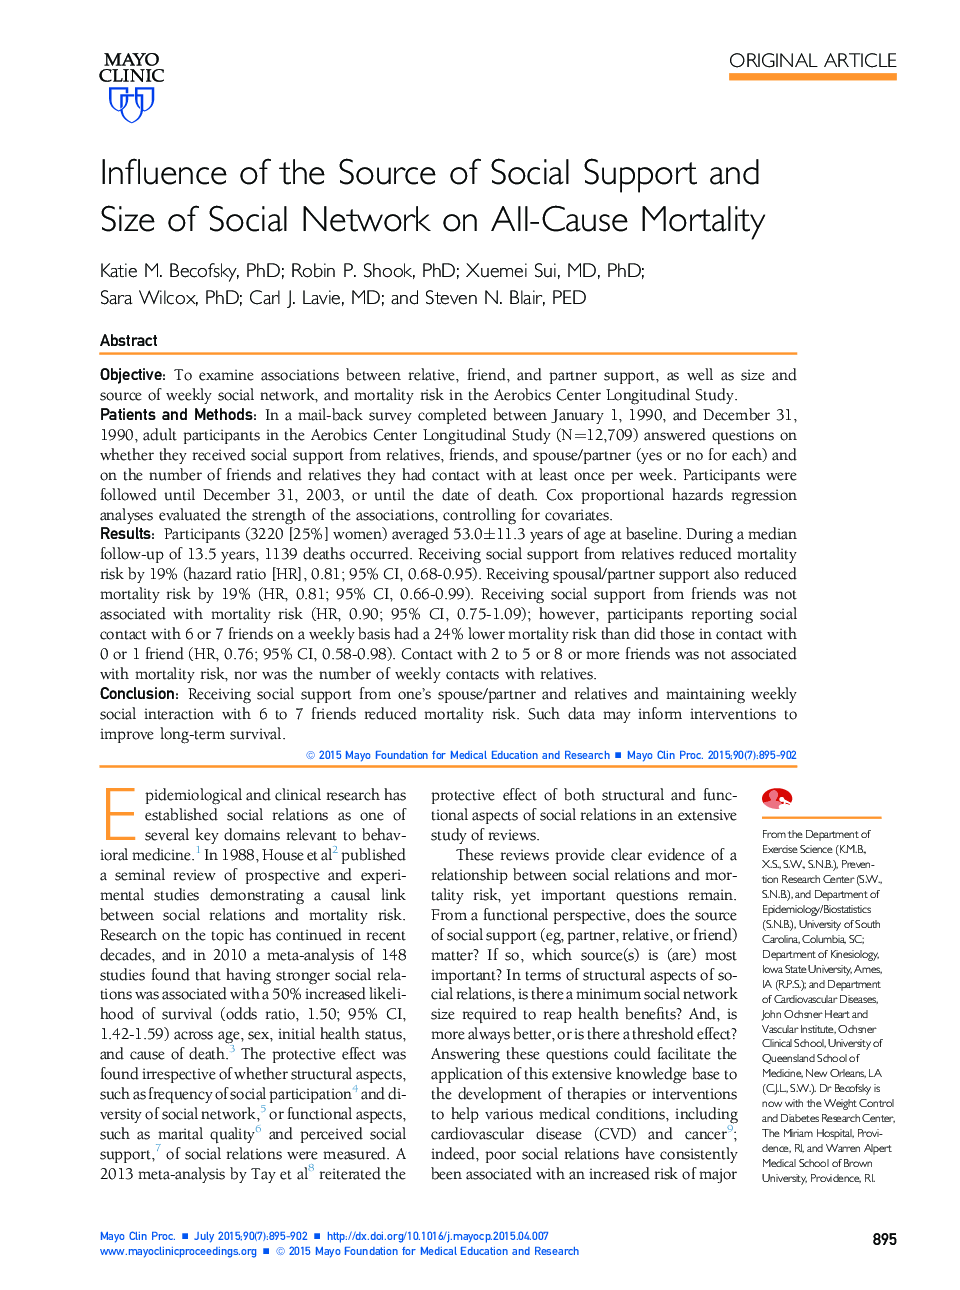 تأثیر منبع حمایت اجتماعی و اندازه شبکه اجتماعی بر مرگ و میر همه جانبه 